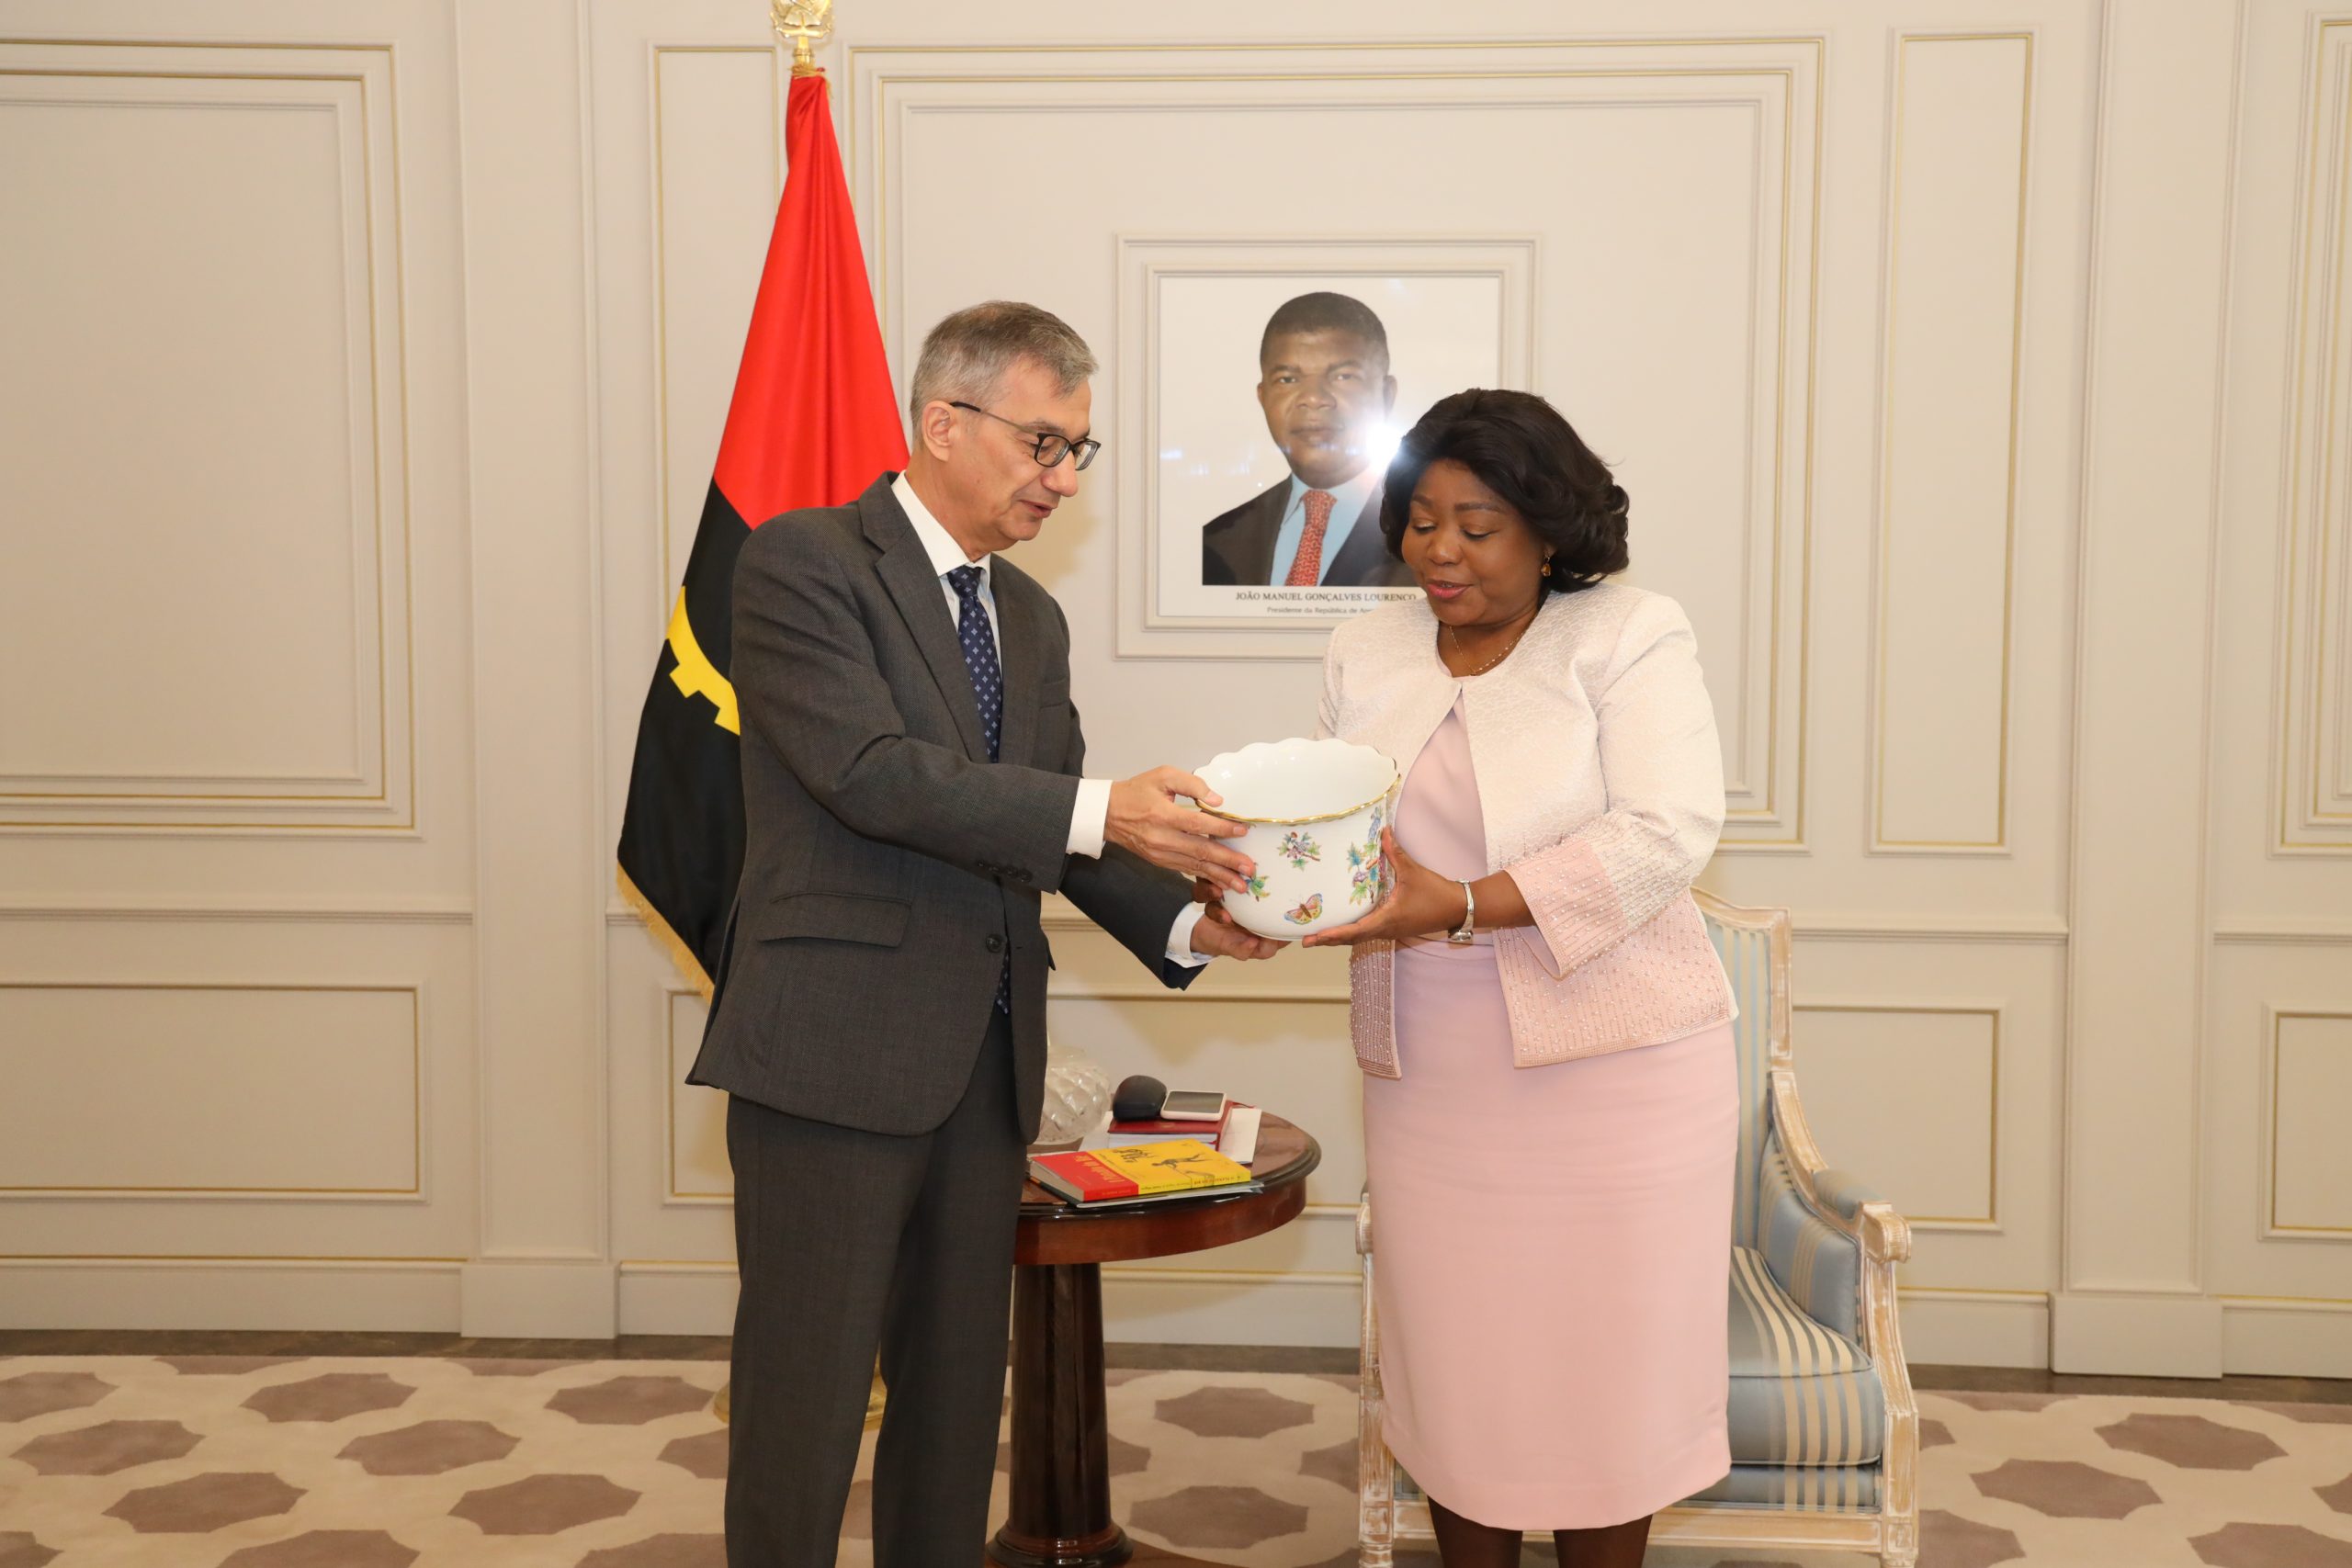 Embaixada da Federação da Rússia na República de Angola